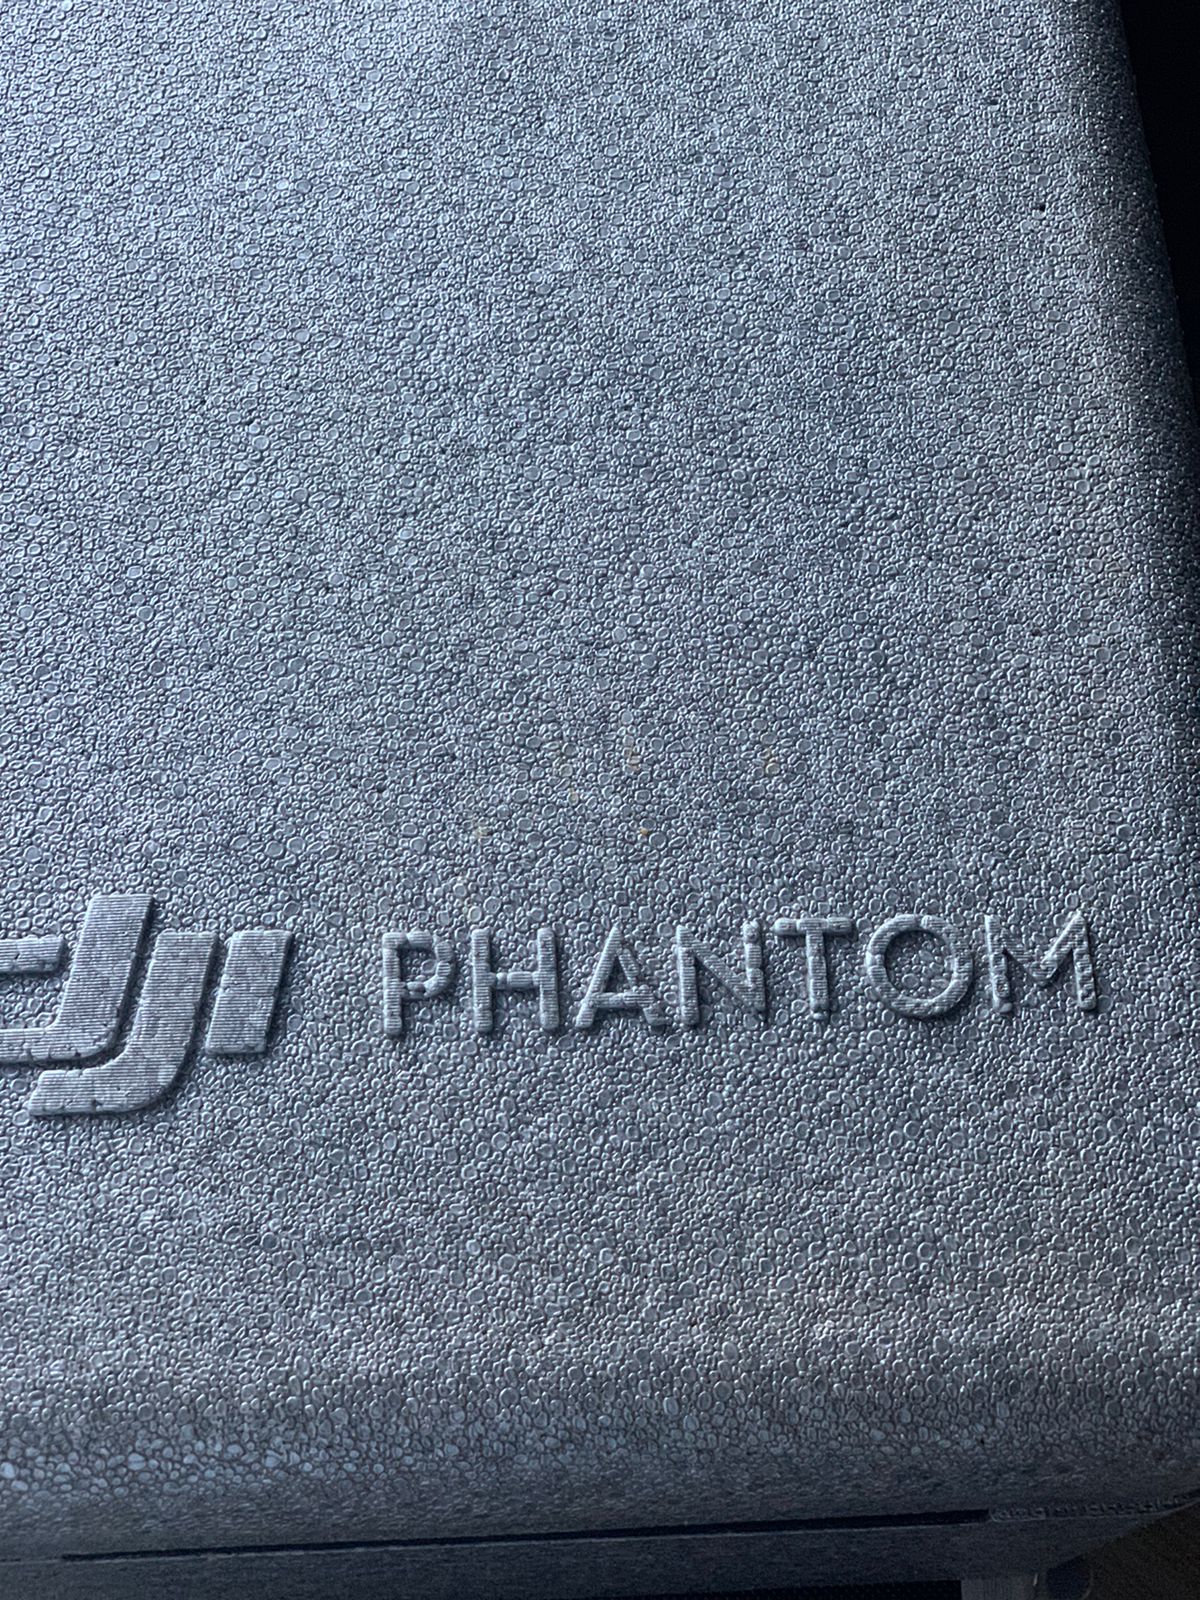 DJI Phantom 4 Standard Drone